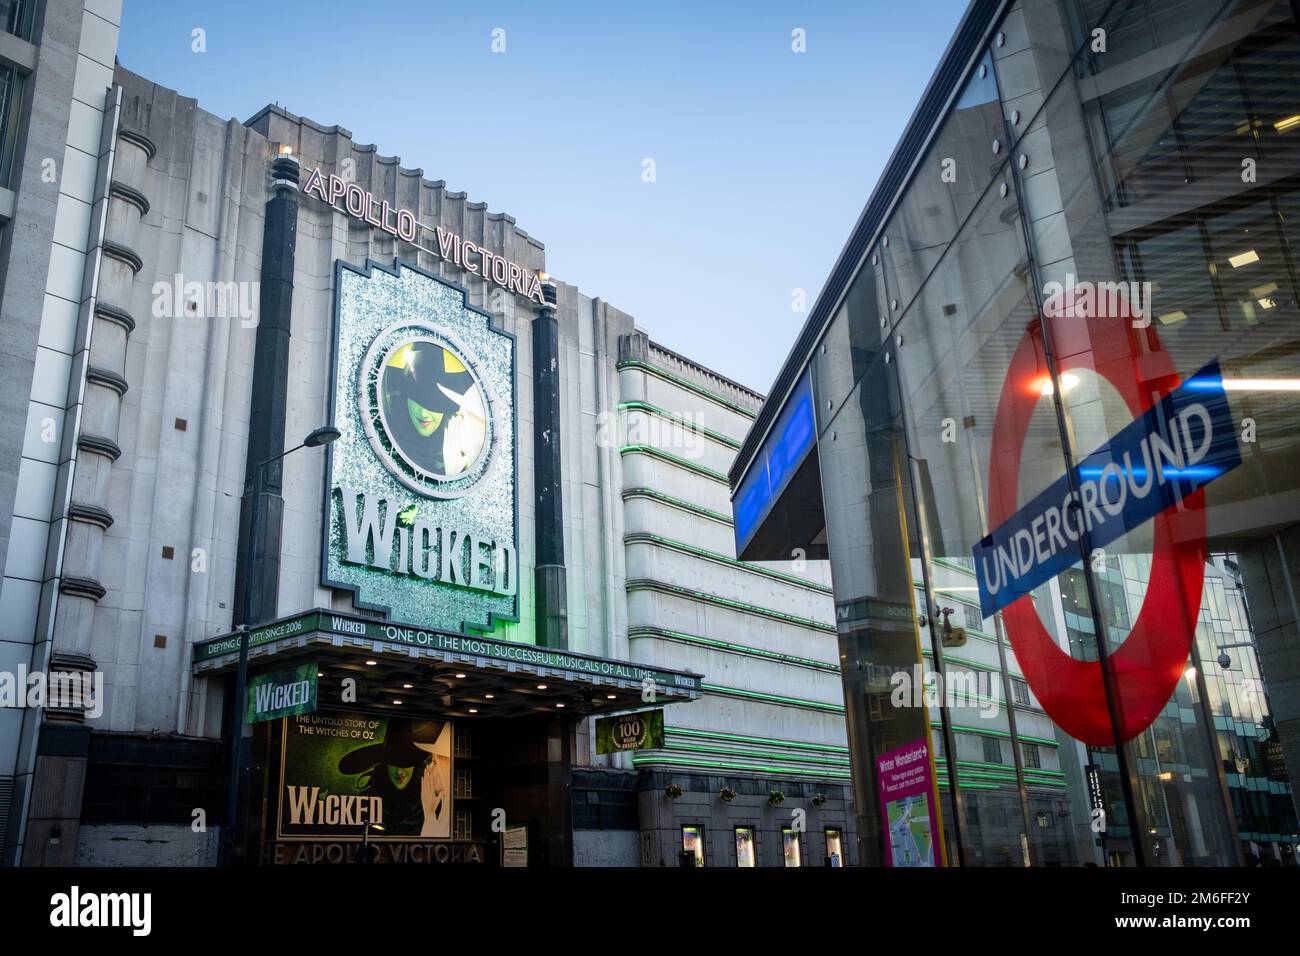 LONDON-: Das Apollo Victoria Theatre mit der lang laufenden Show "Wicked", die sich vor der Victoria Station befindet Stockfoto